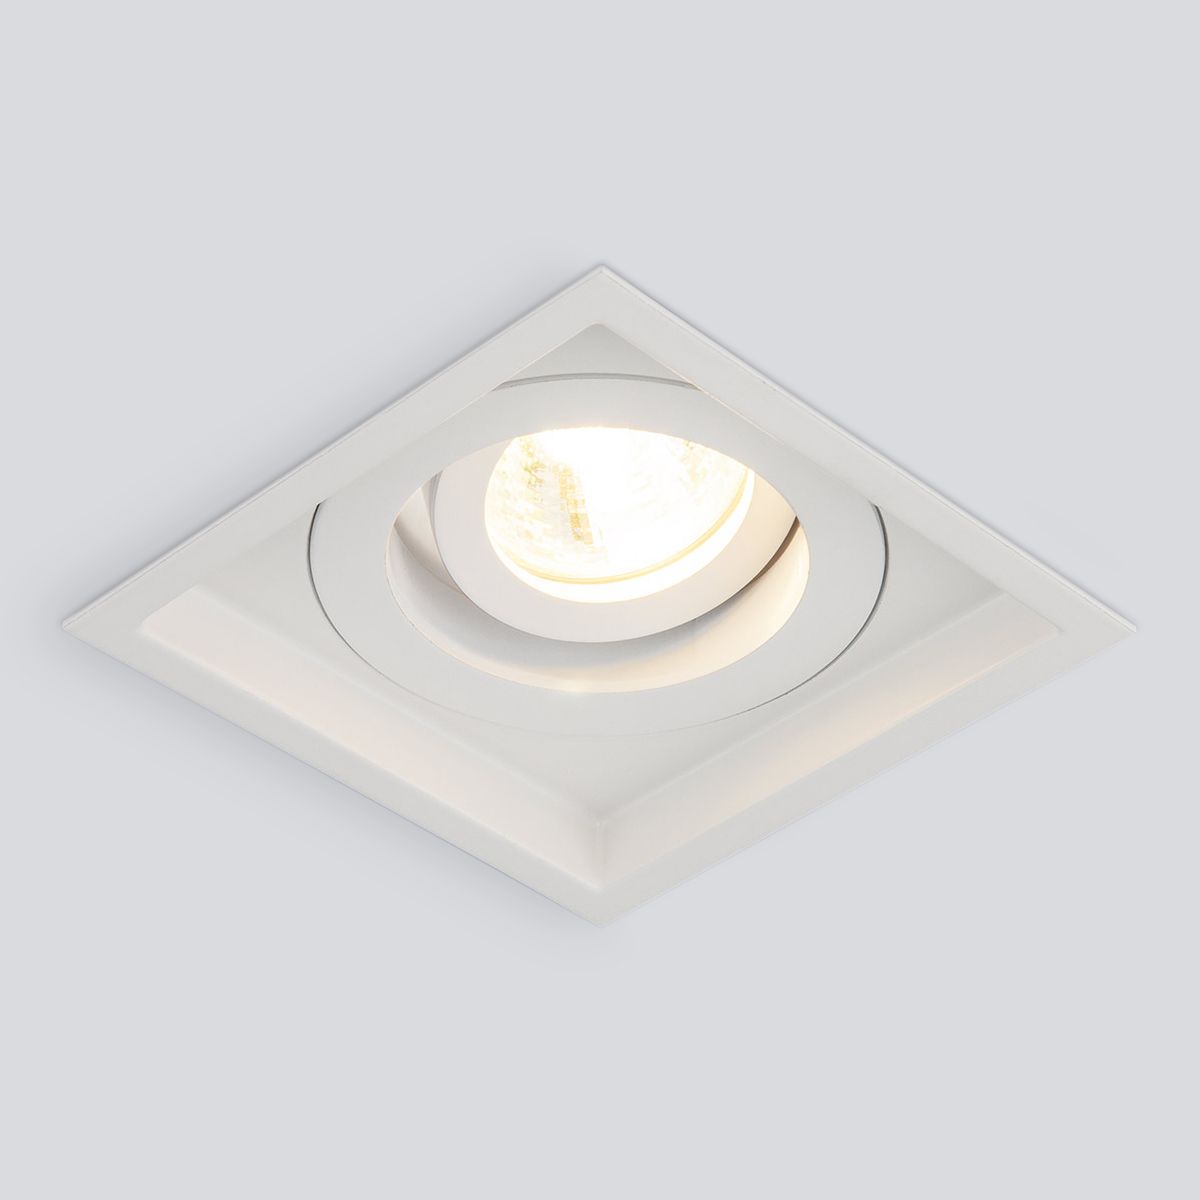 Алюминиевый точечный светильник 1071/1 MR16 WH белый. Фото 1